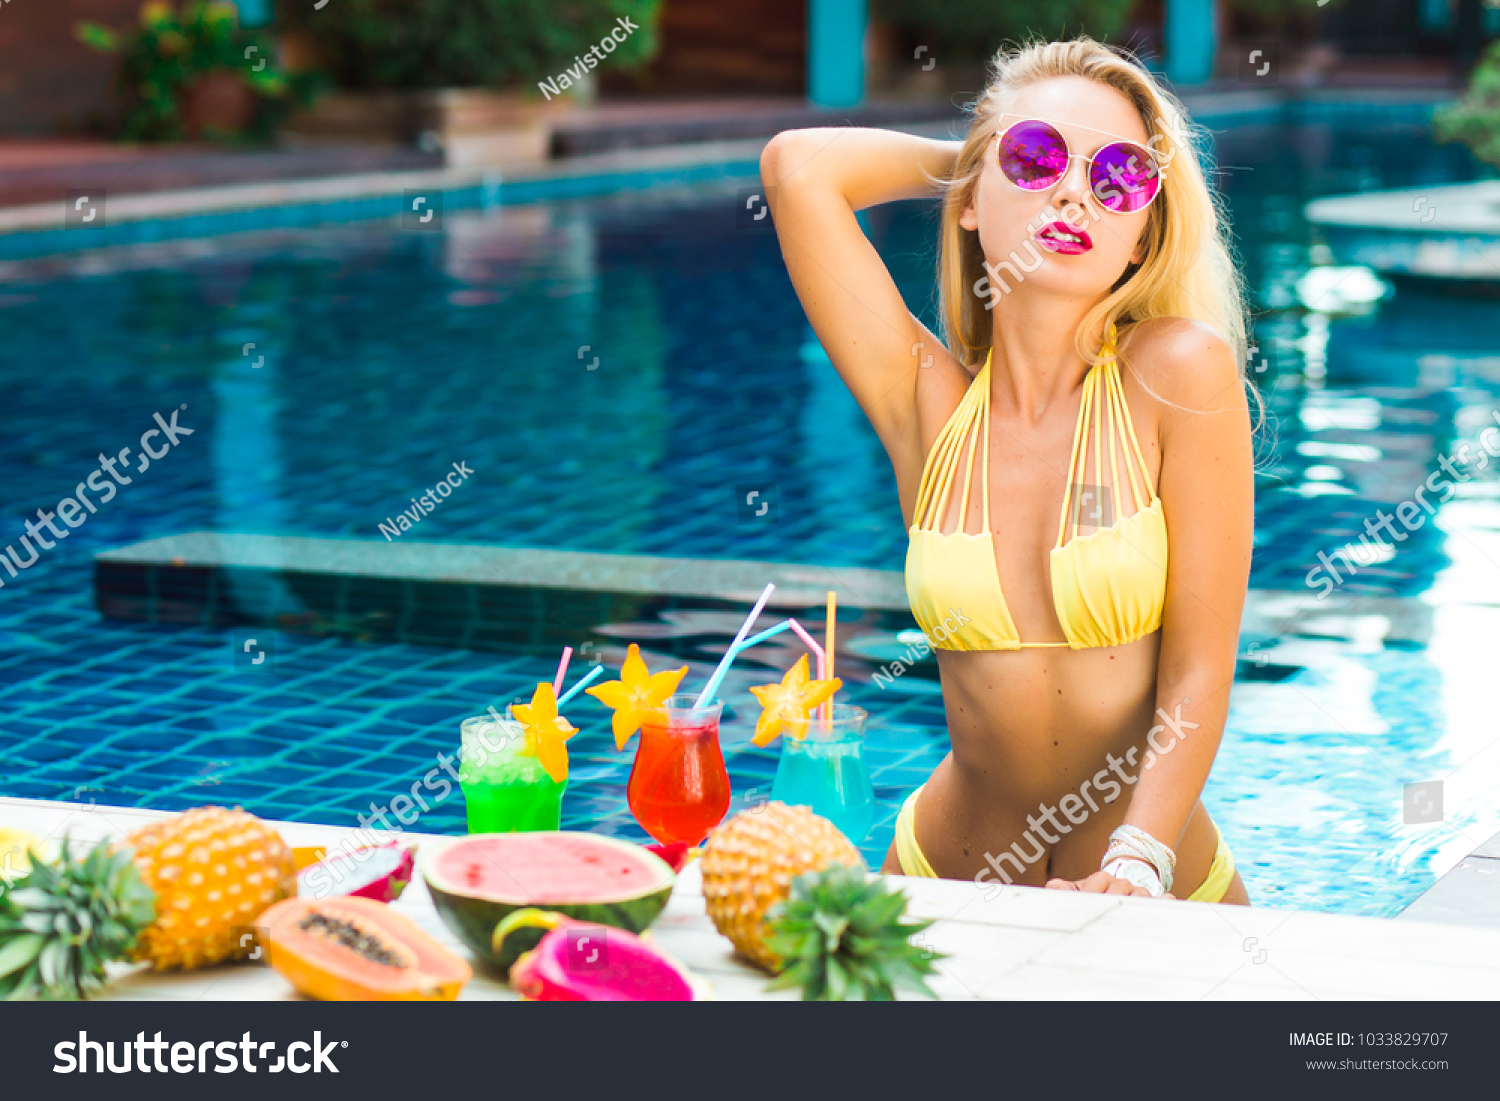 Голая барышня у бассейна в жаркий солнечный день